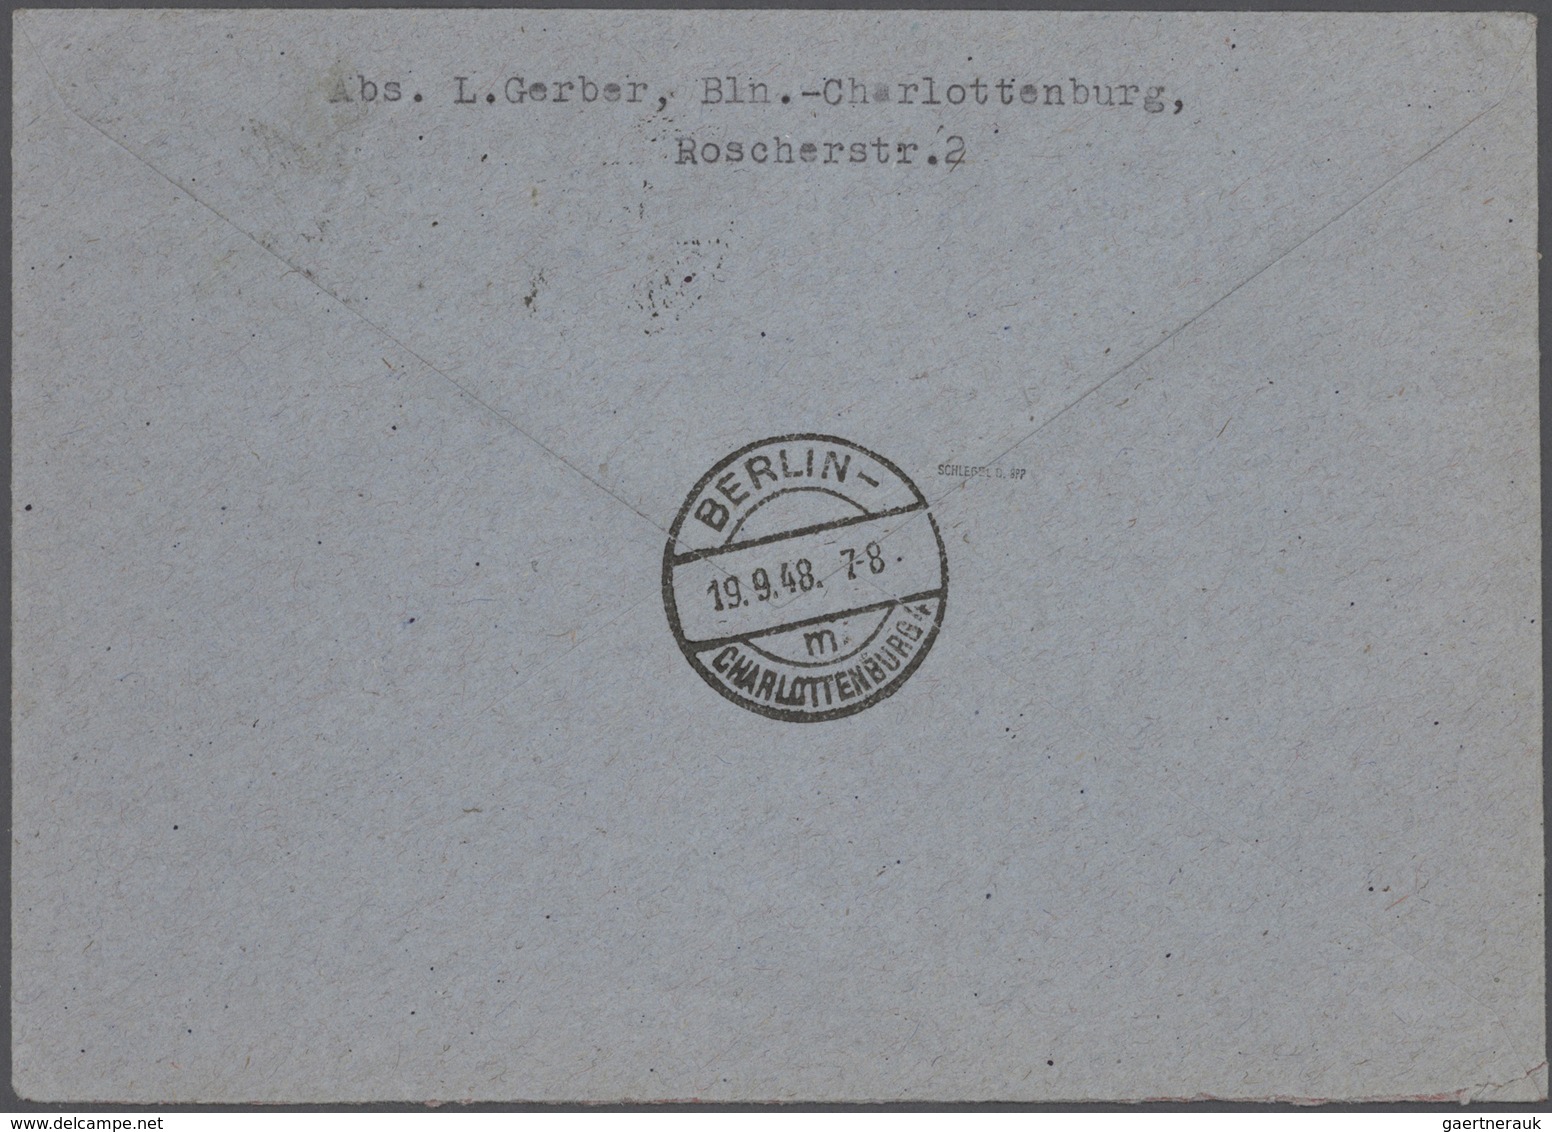 Br Berlin: 1948, kpl. Satz Schwarzaufdrucke auf insges. 9 Briefen, dabei Markwerte je einzel auf großf.